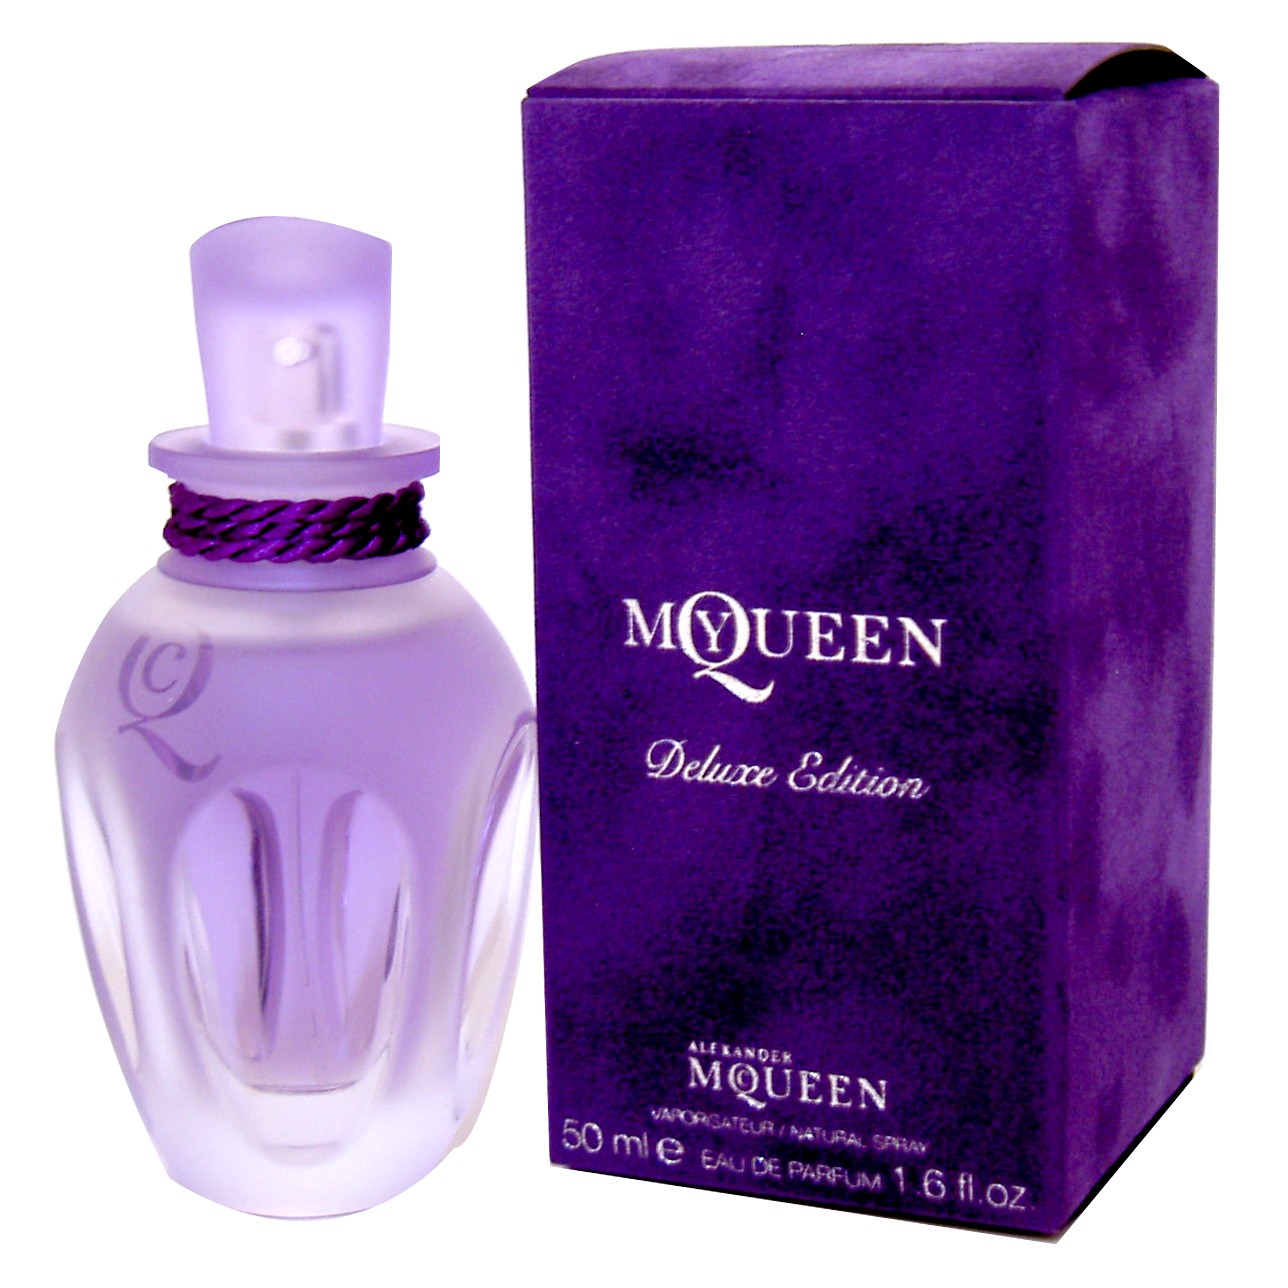 Alexander McQueen My Queen Deluxe Edition